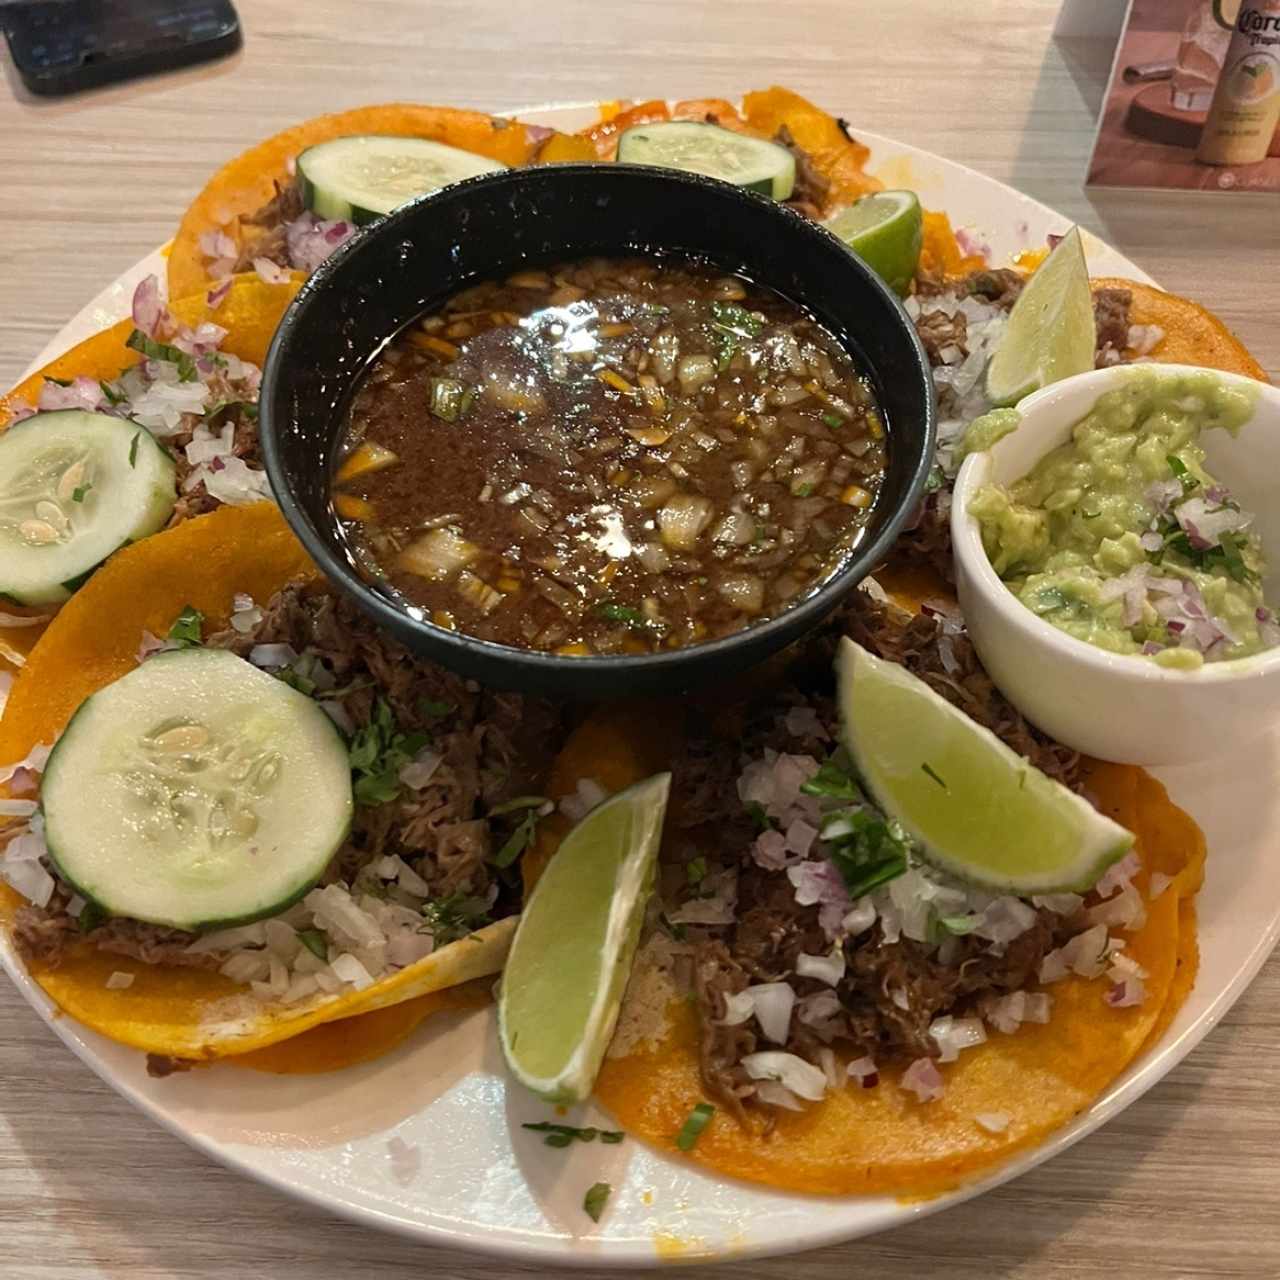 Orden de tacos biria 